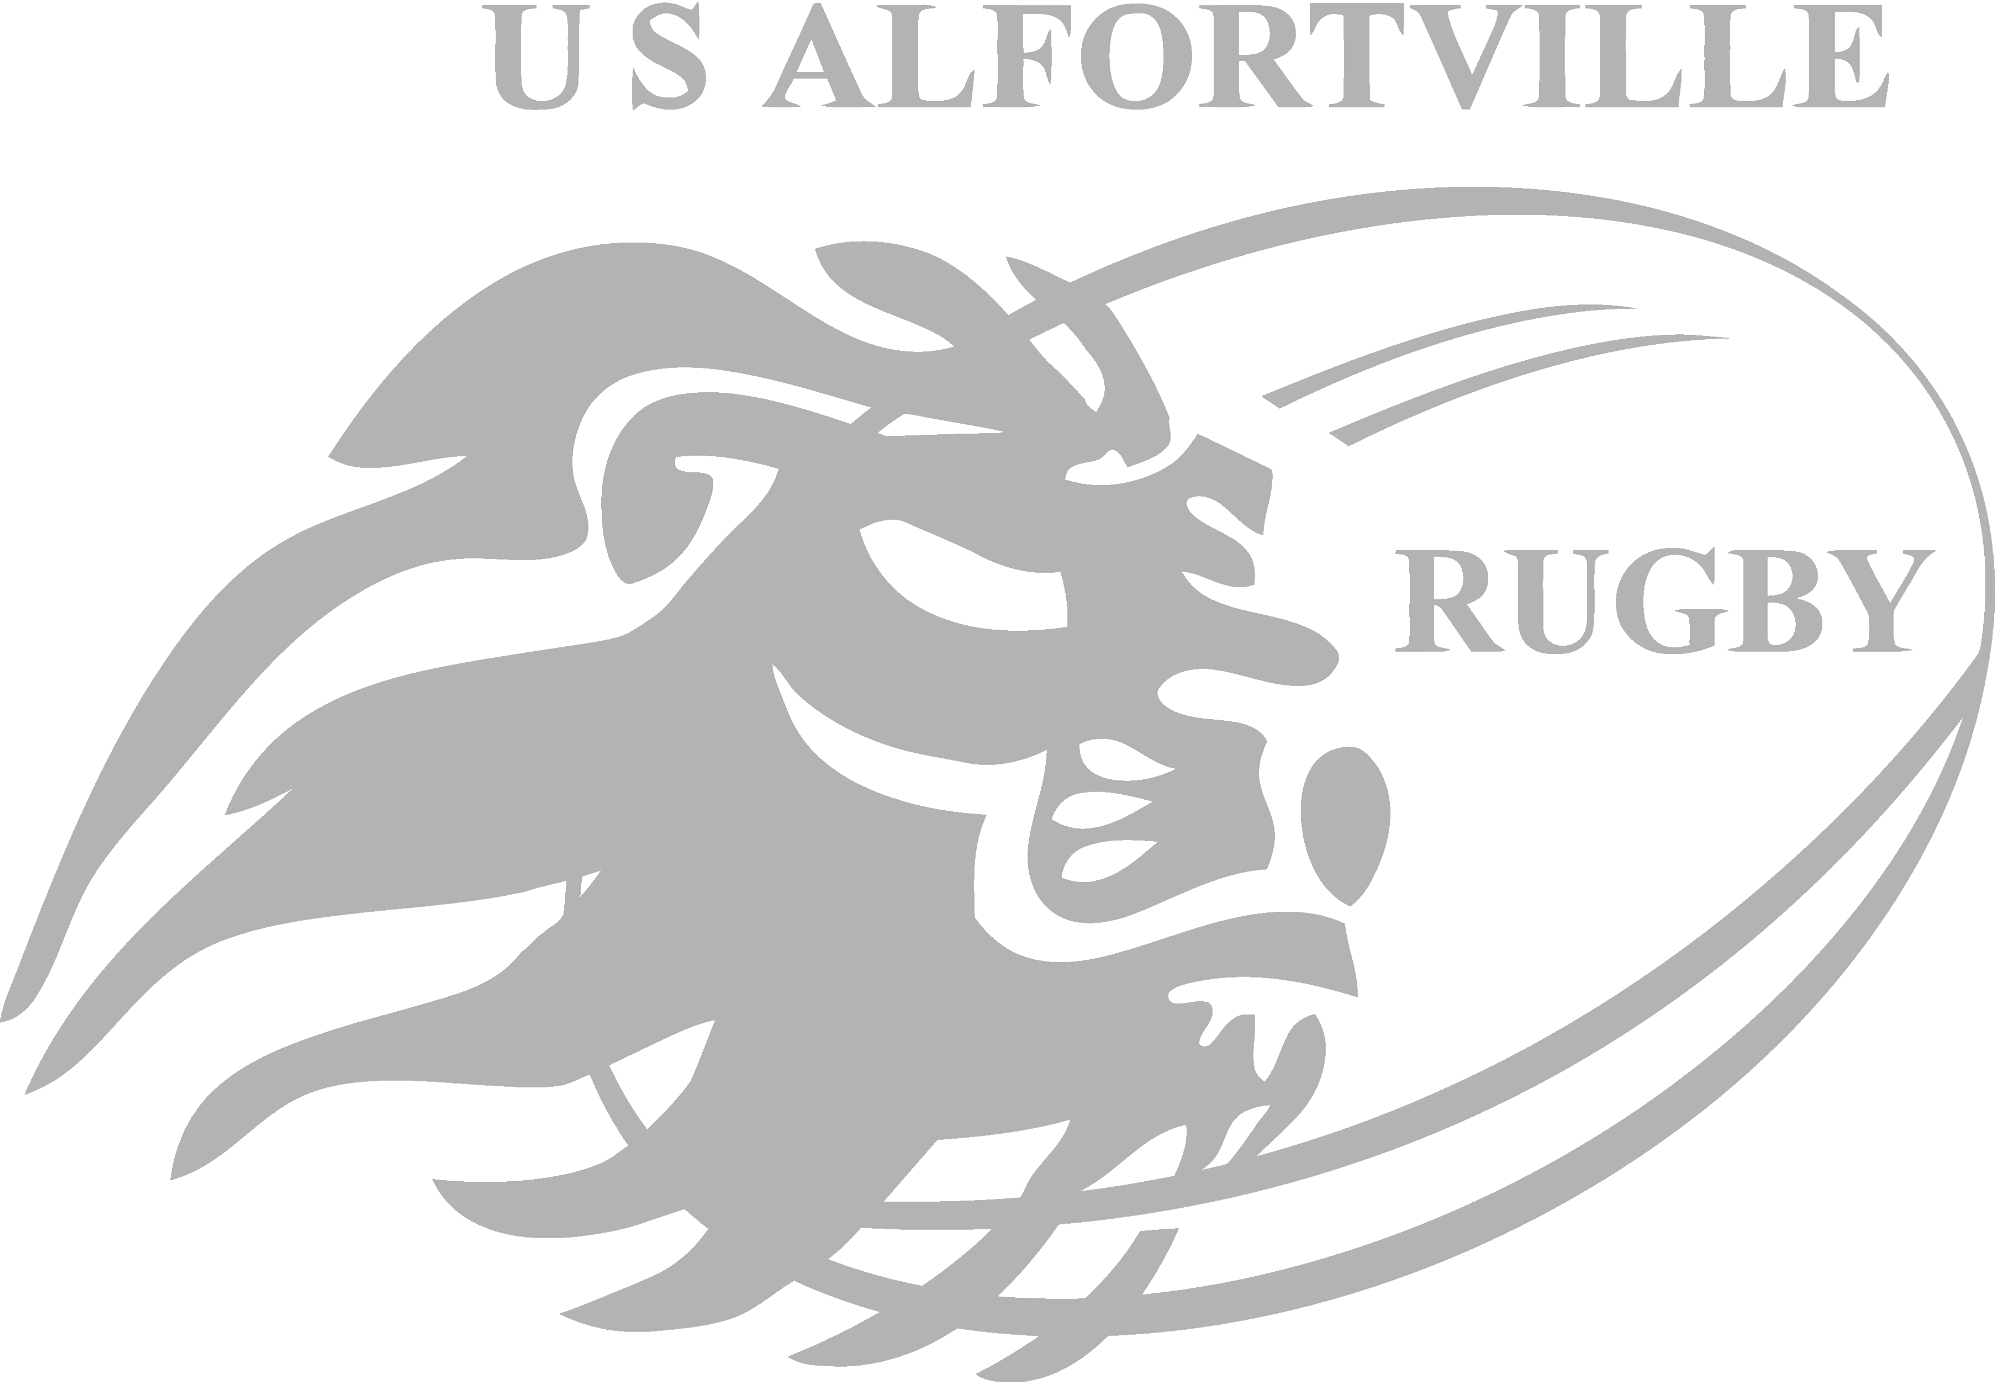 alfortville-rugby